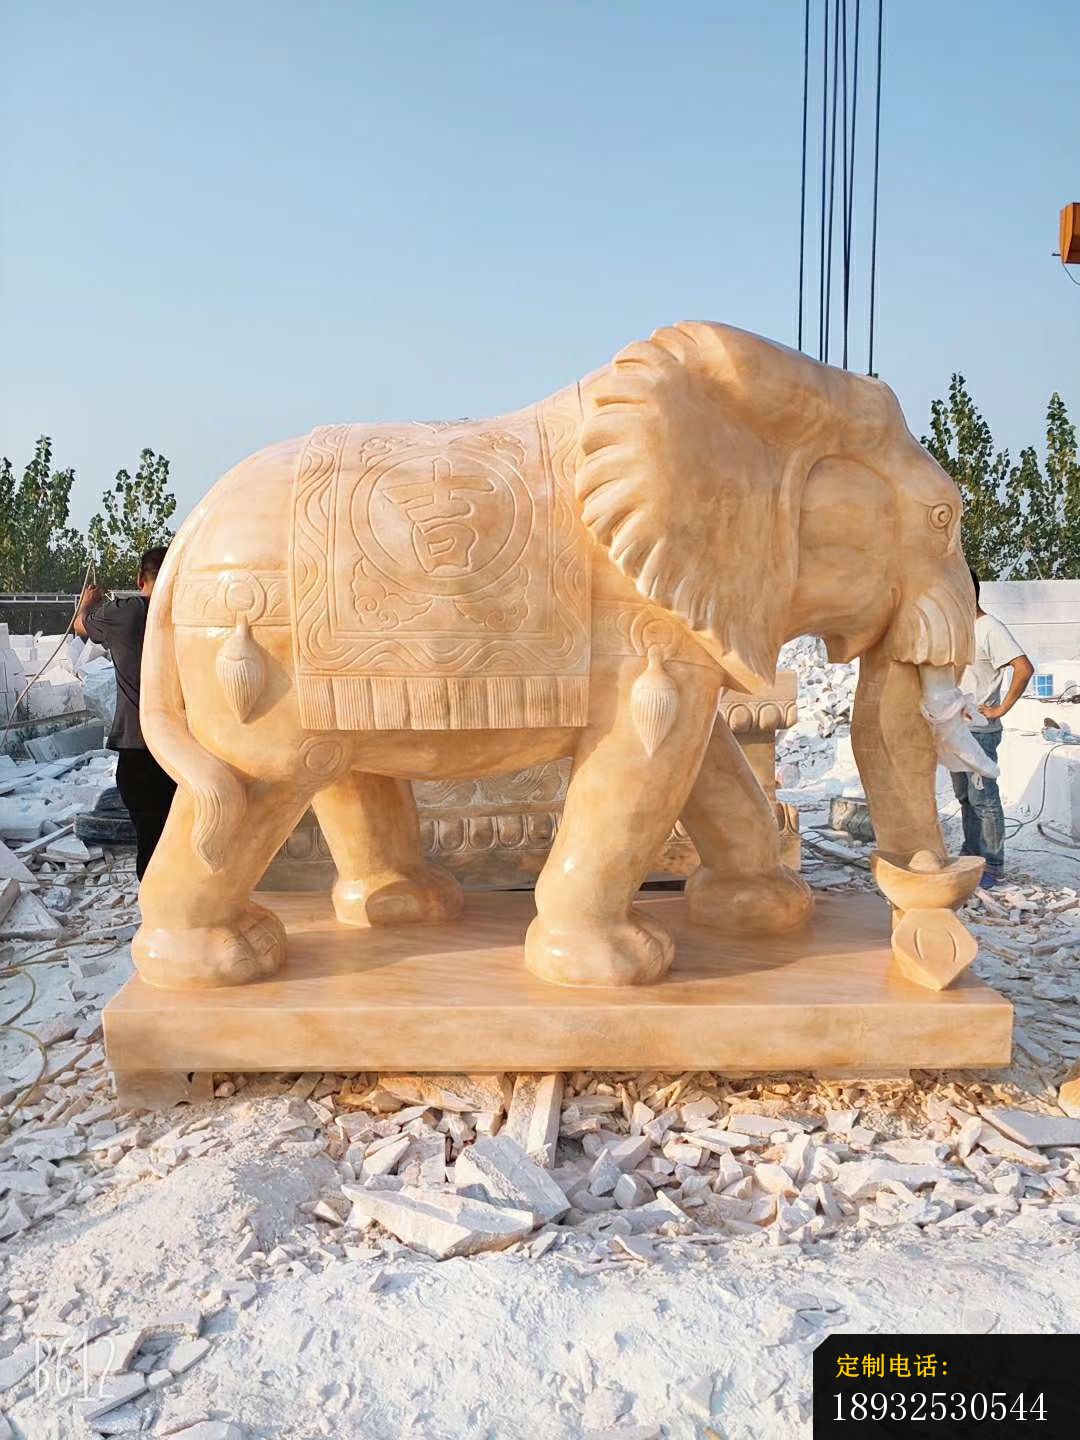 石雕动物大象雕塑_1080*1440